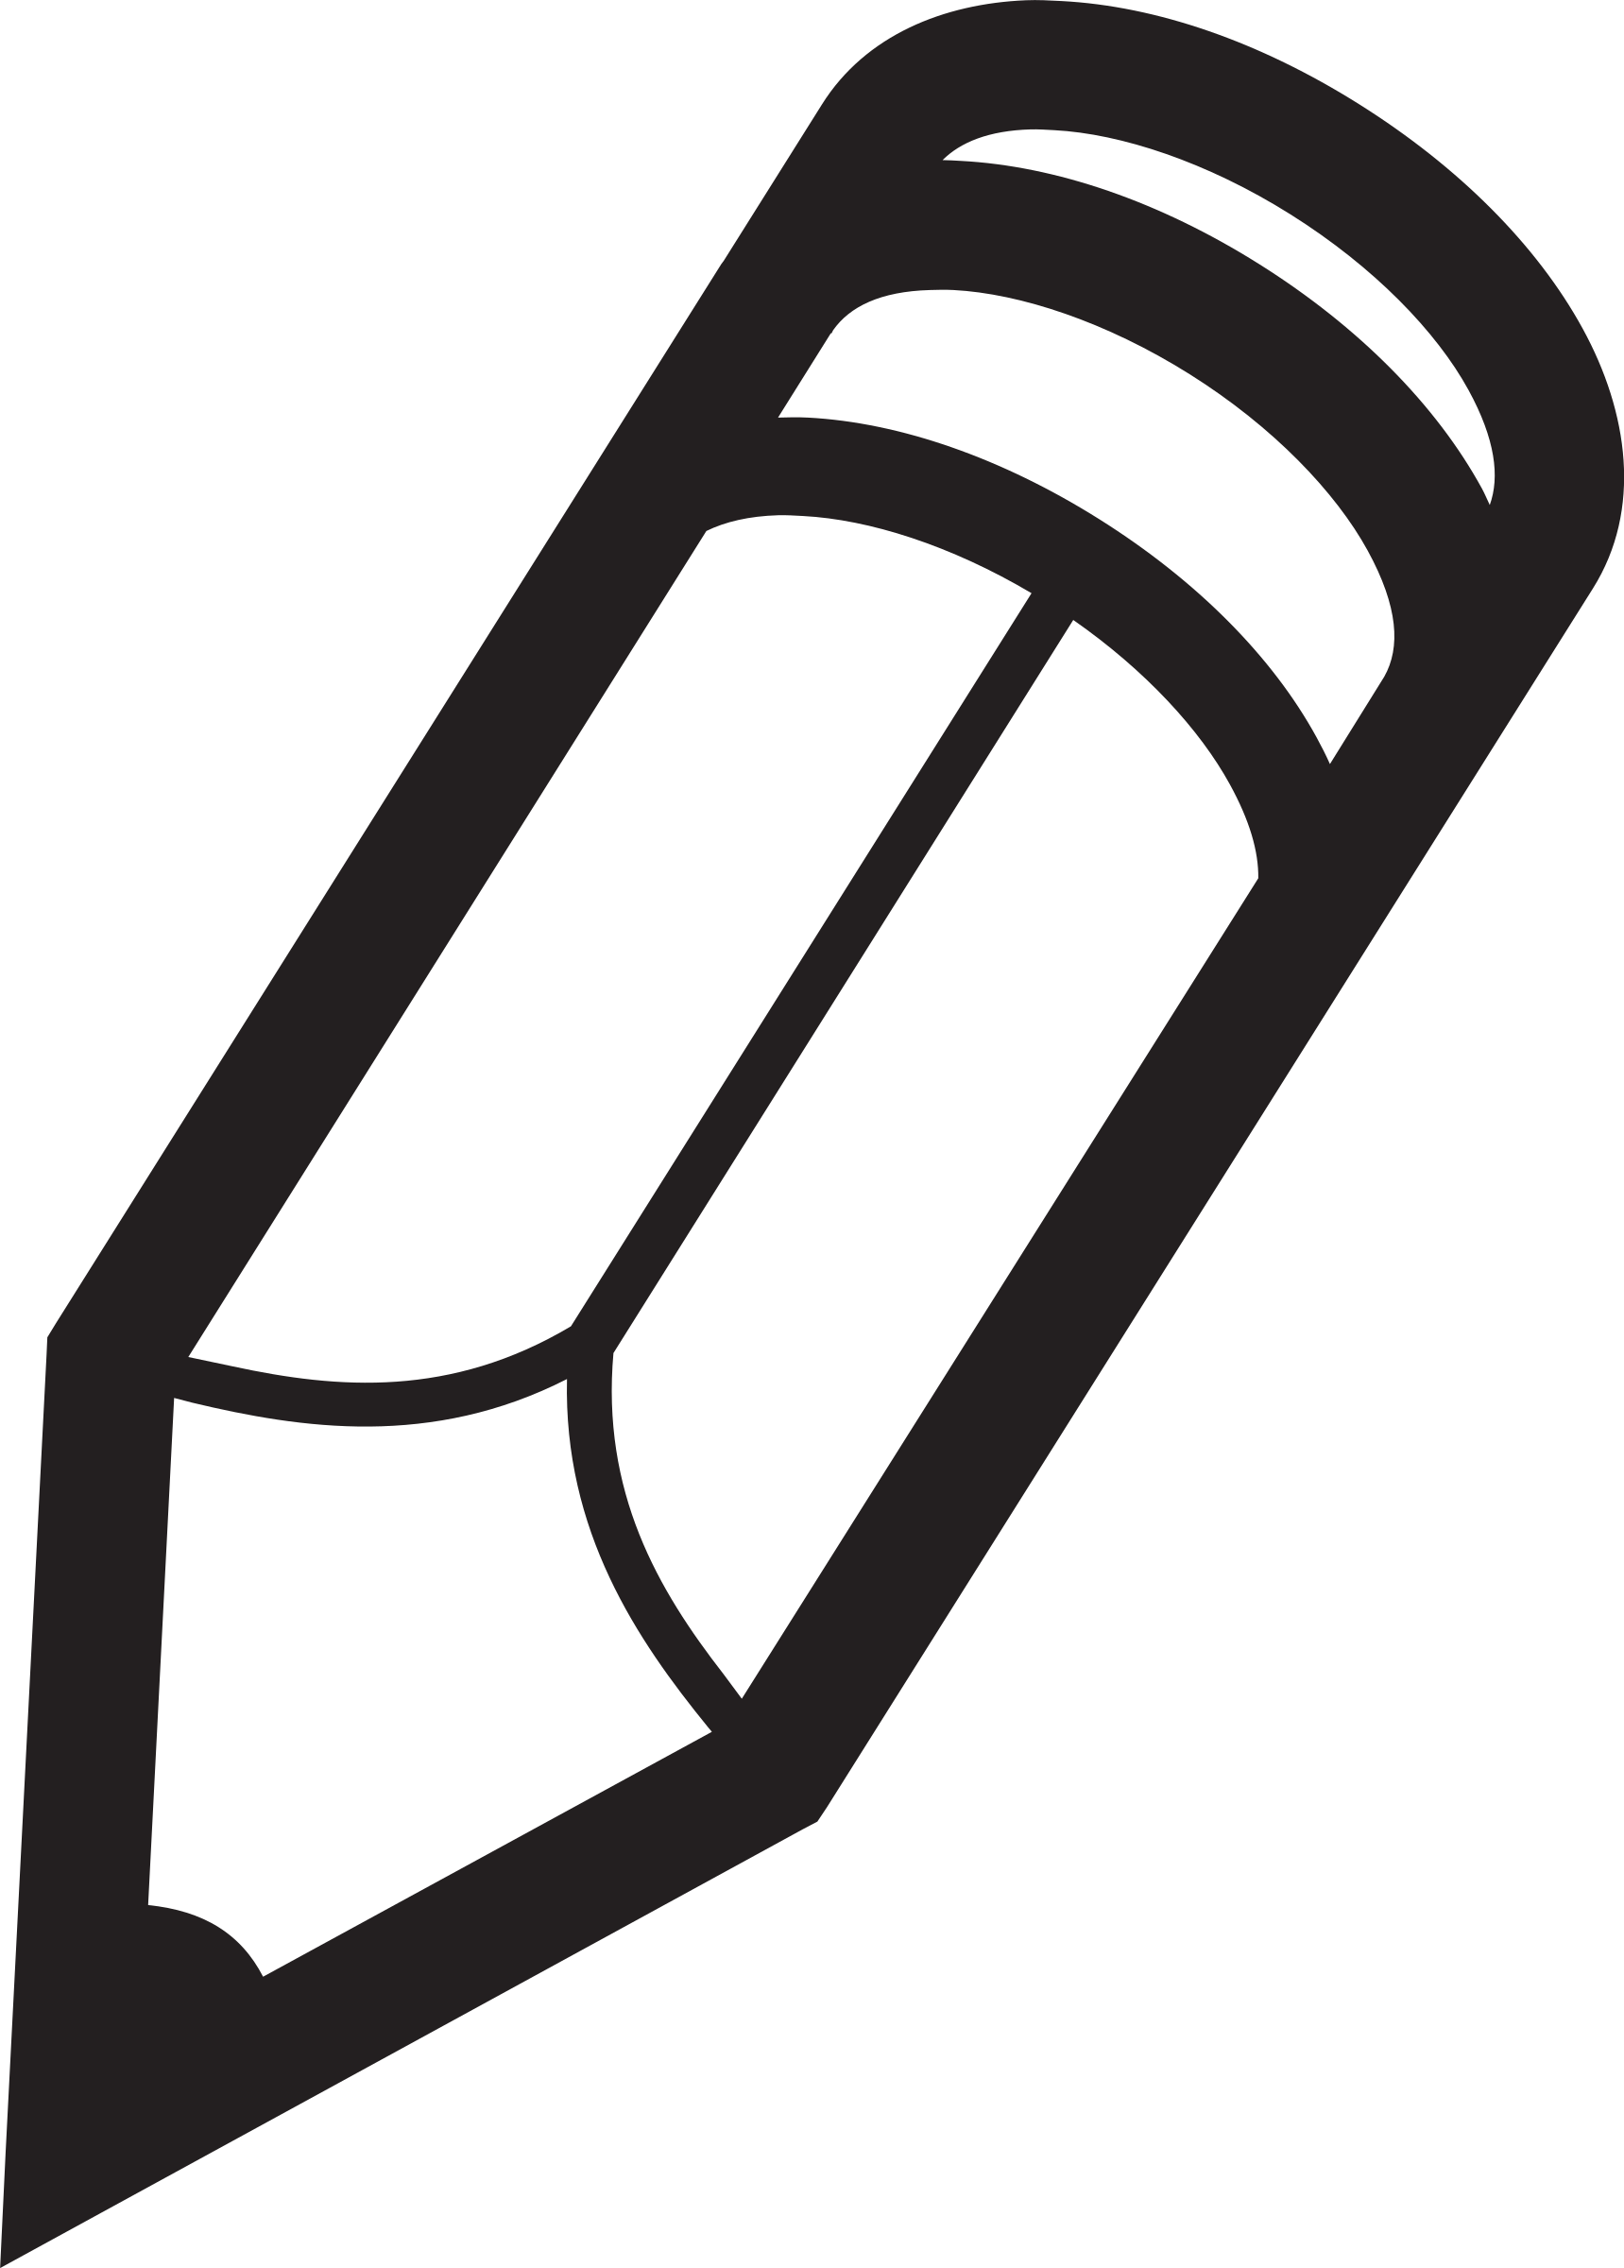 Big image png. Clipart pencil logo